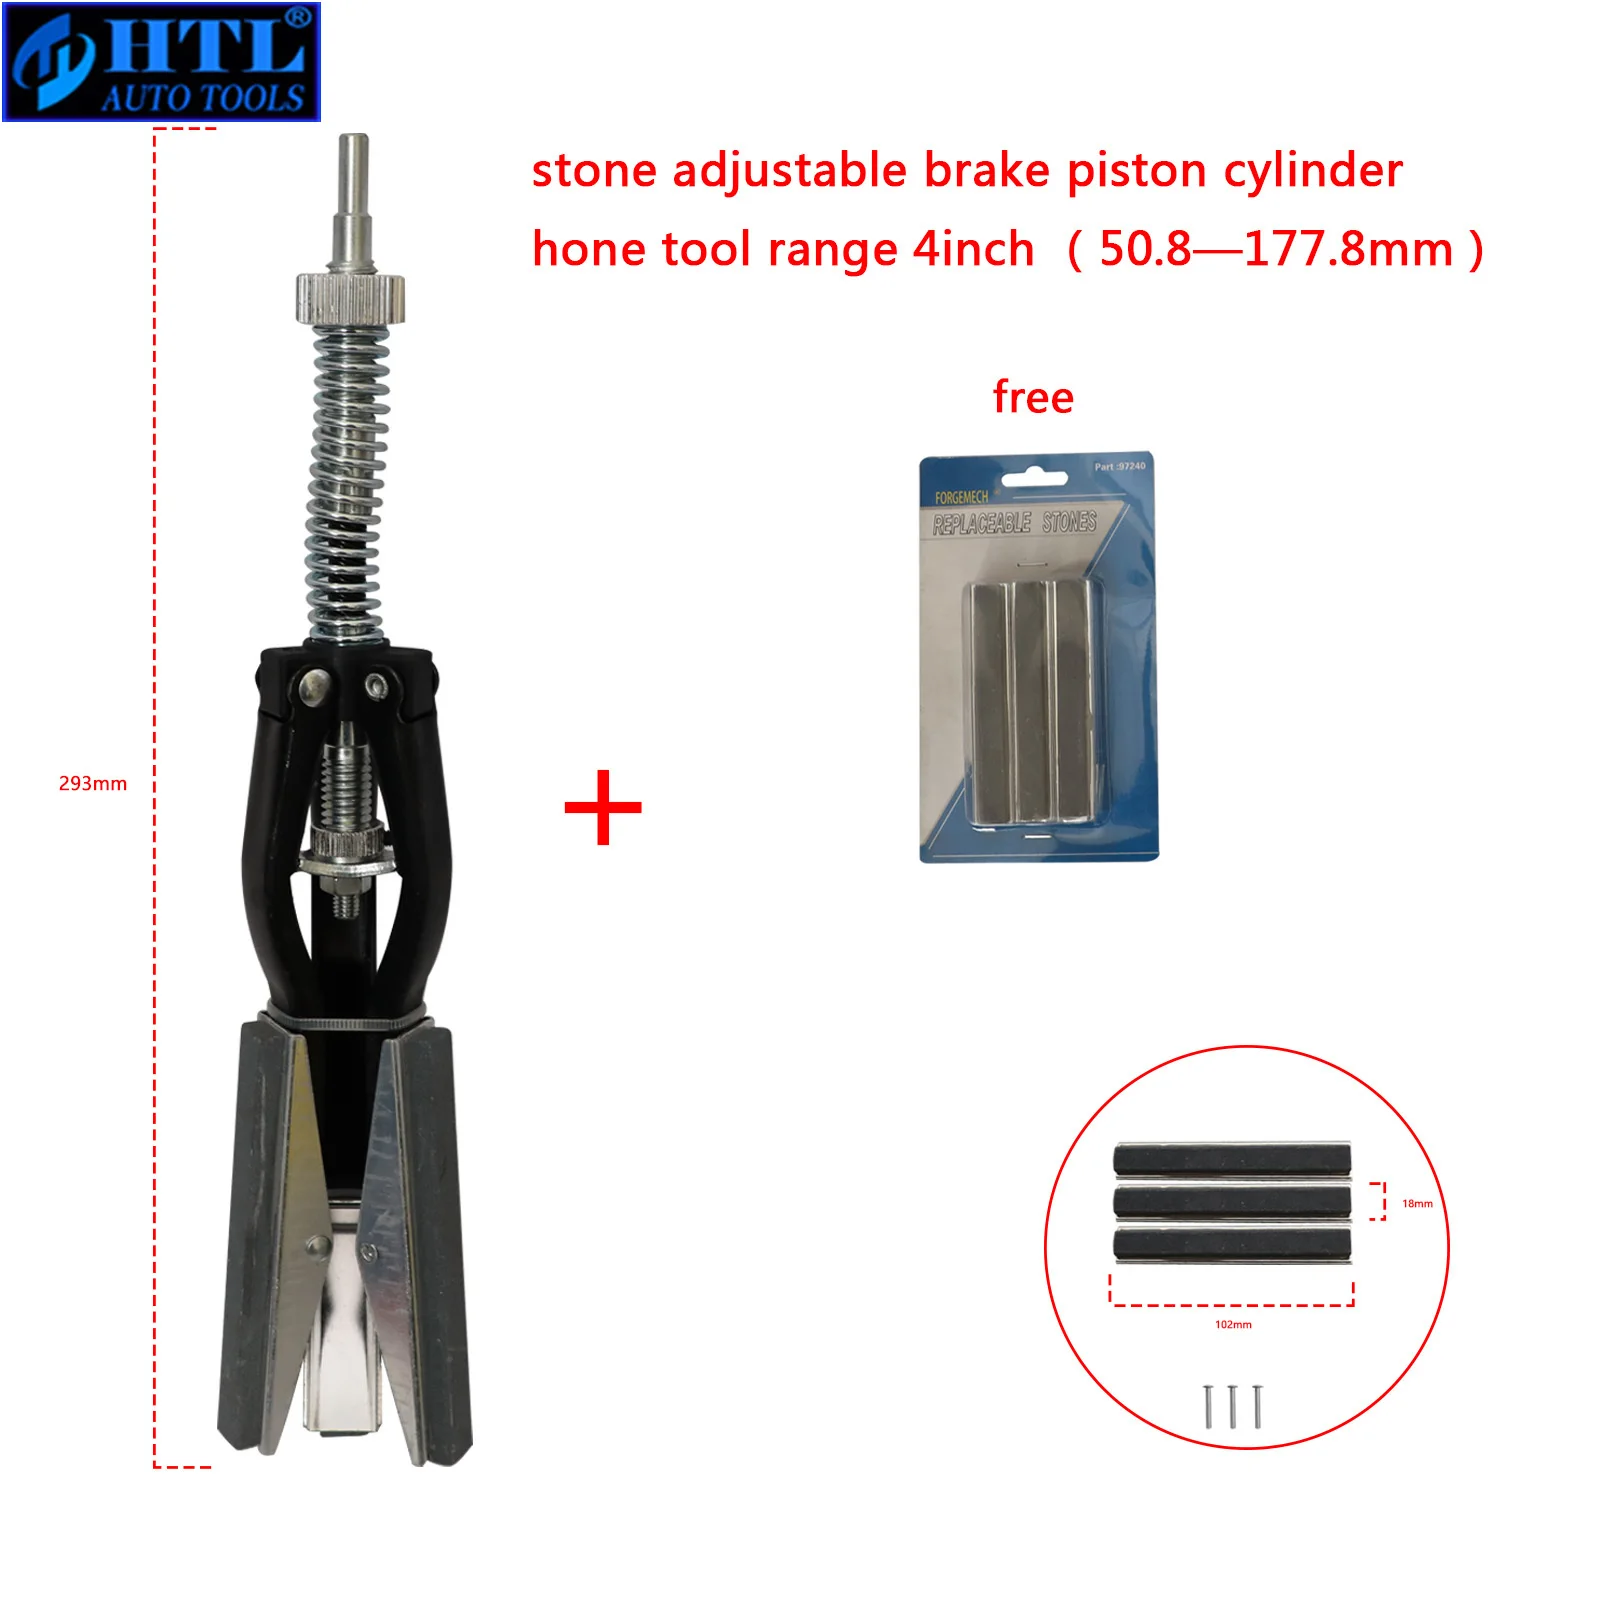 Replacerable Shaft Stone Adjustable Brake Piston Engine Cylinder Honing Tool